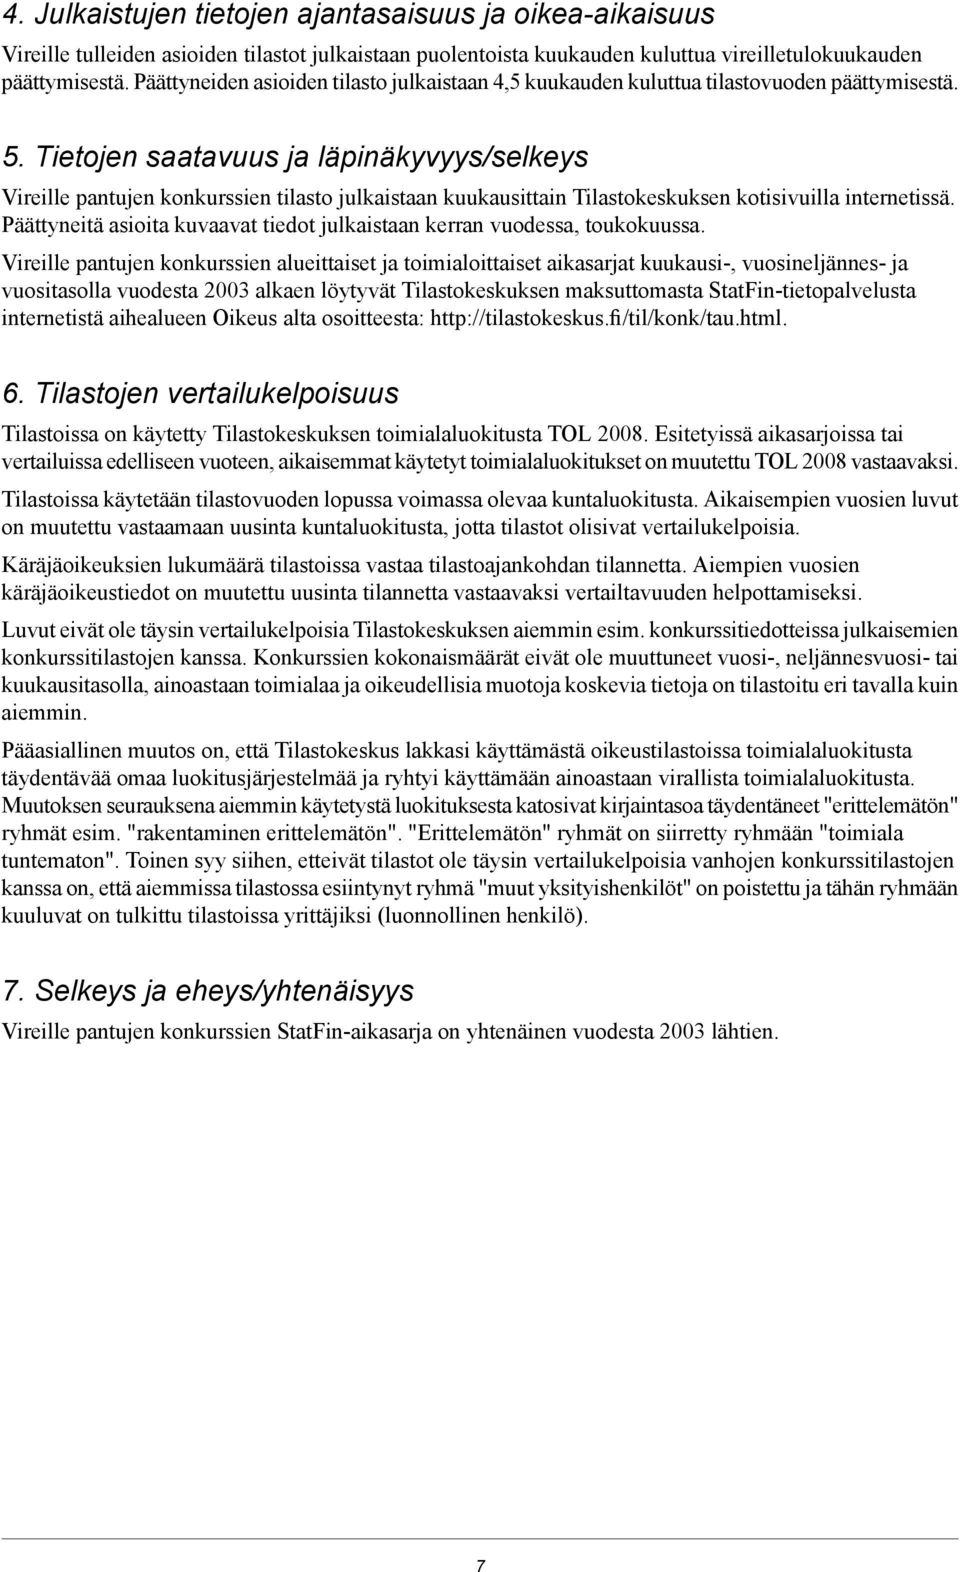 Tietojen saatavuus ja läpinäkyvyys/selkeys Vireille pantujen konkurssien tilasto julkaistaan kuukausittain Tilastokeskuksen kotisivuilla internetissä.